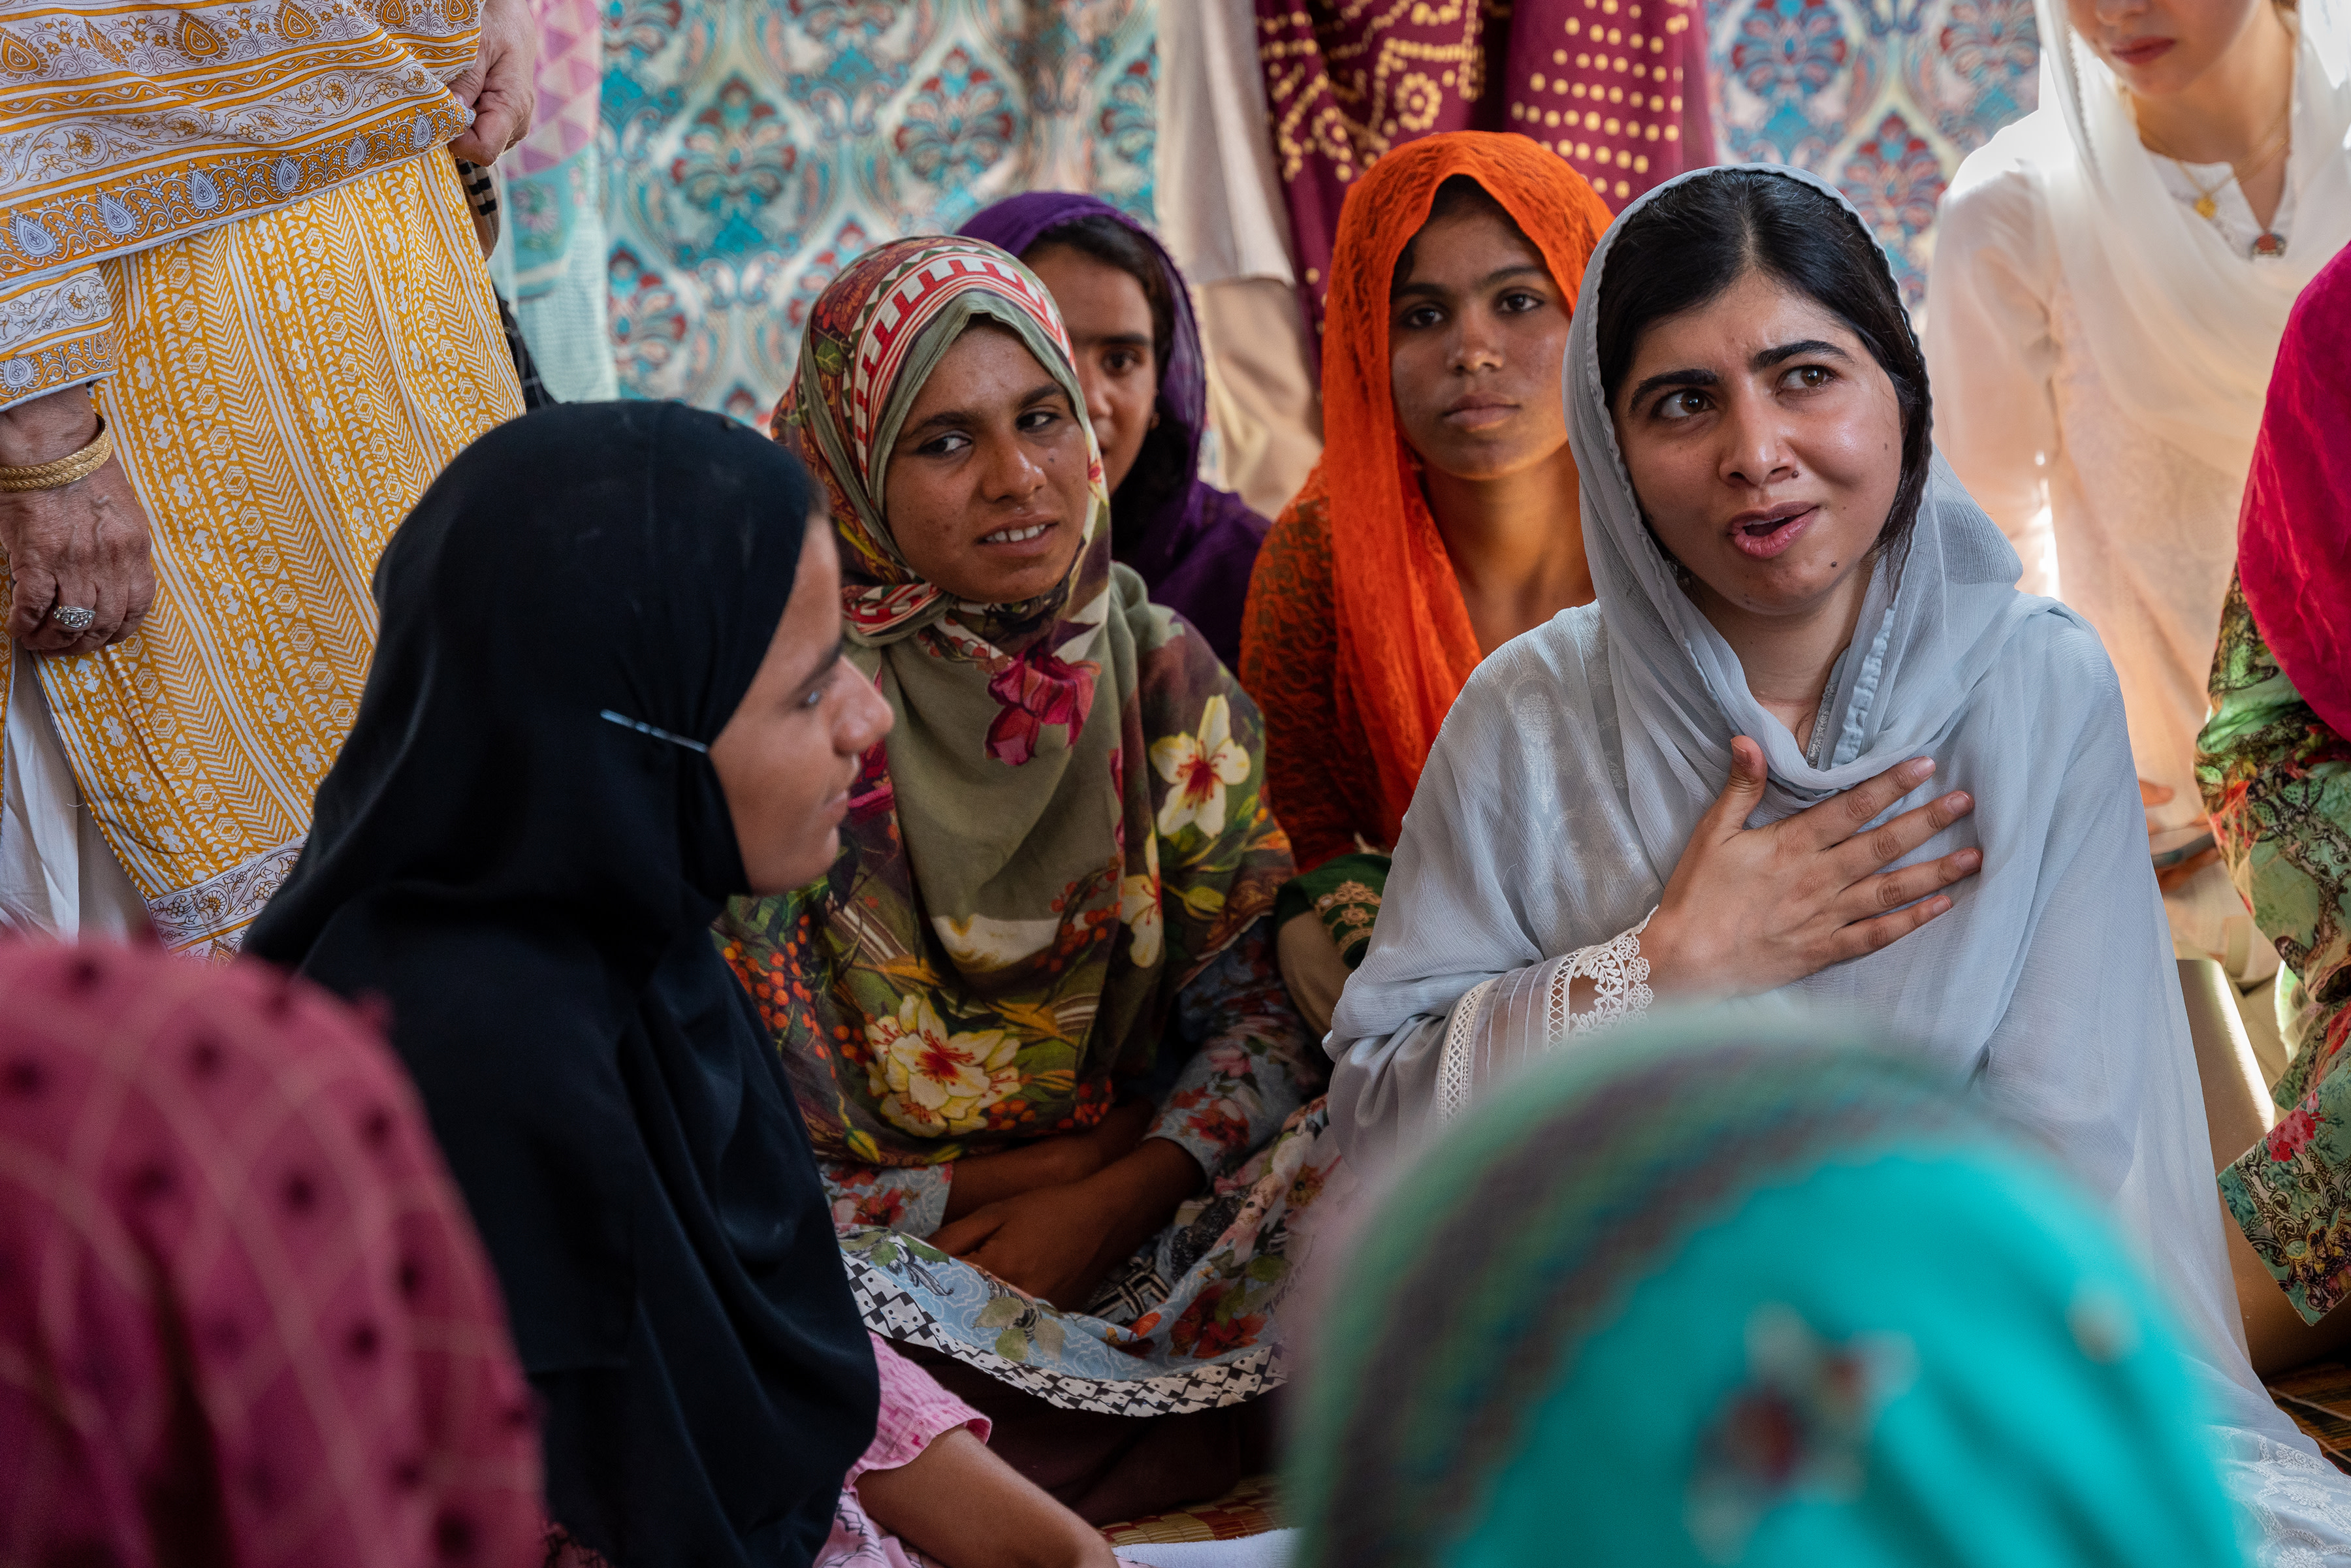 Malala speaking with Sohaila. Credit: Amna Zuberi for Malala Fund